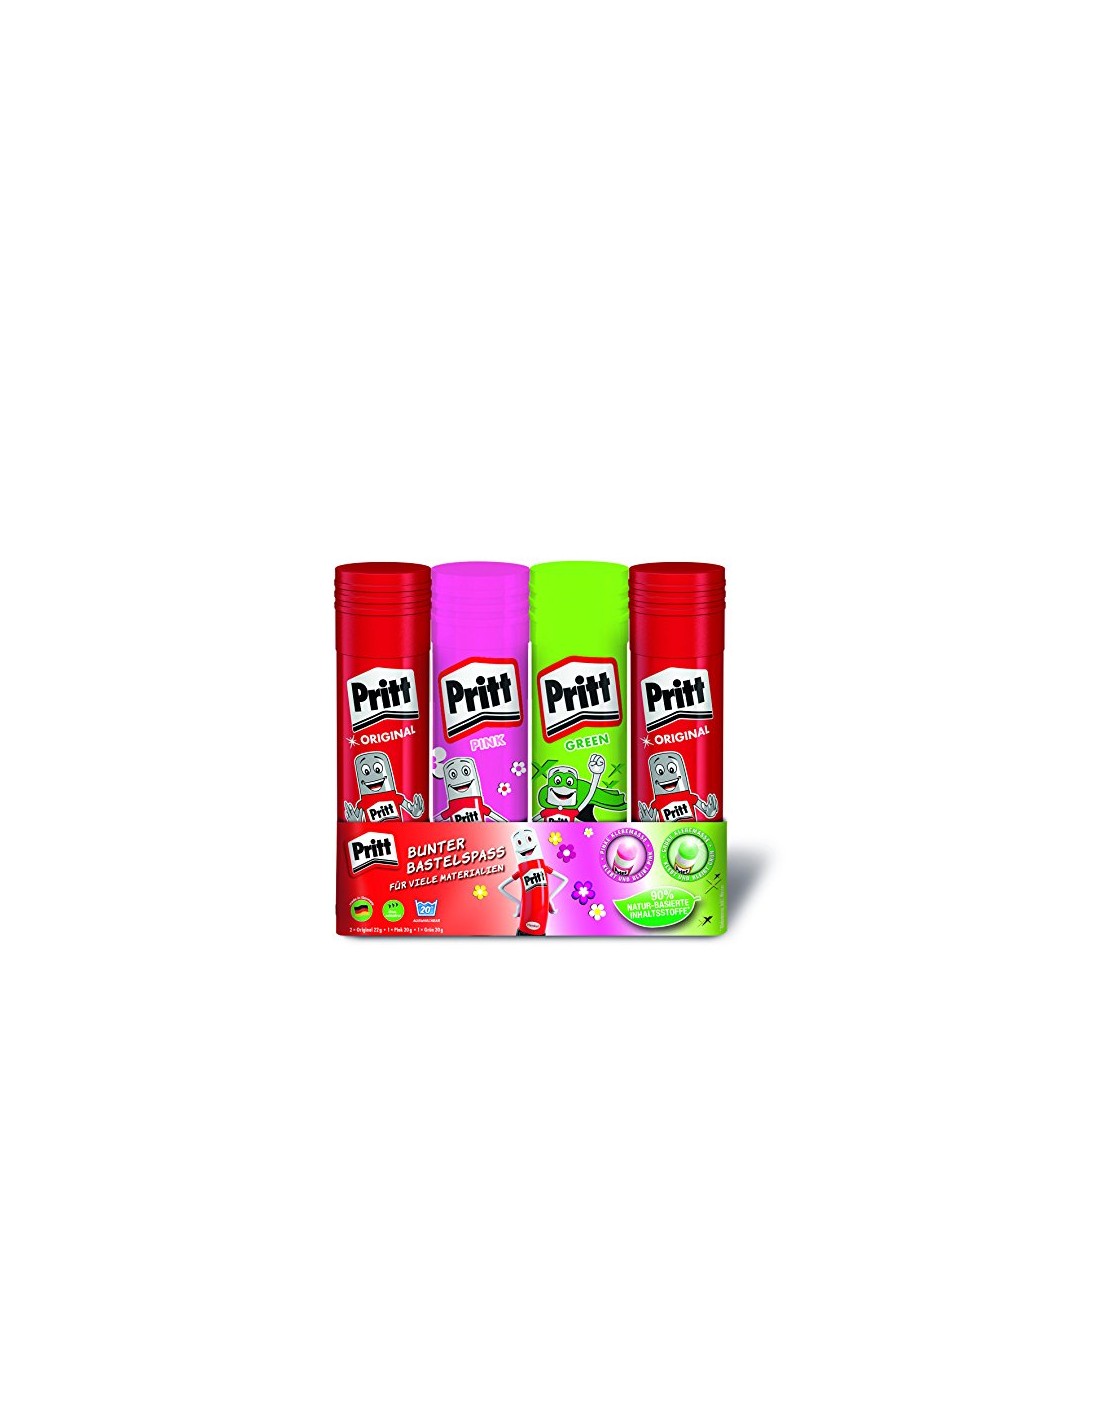 Fun Colors Glue Sticks - Pritt